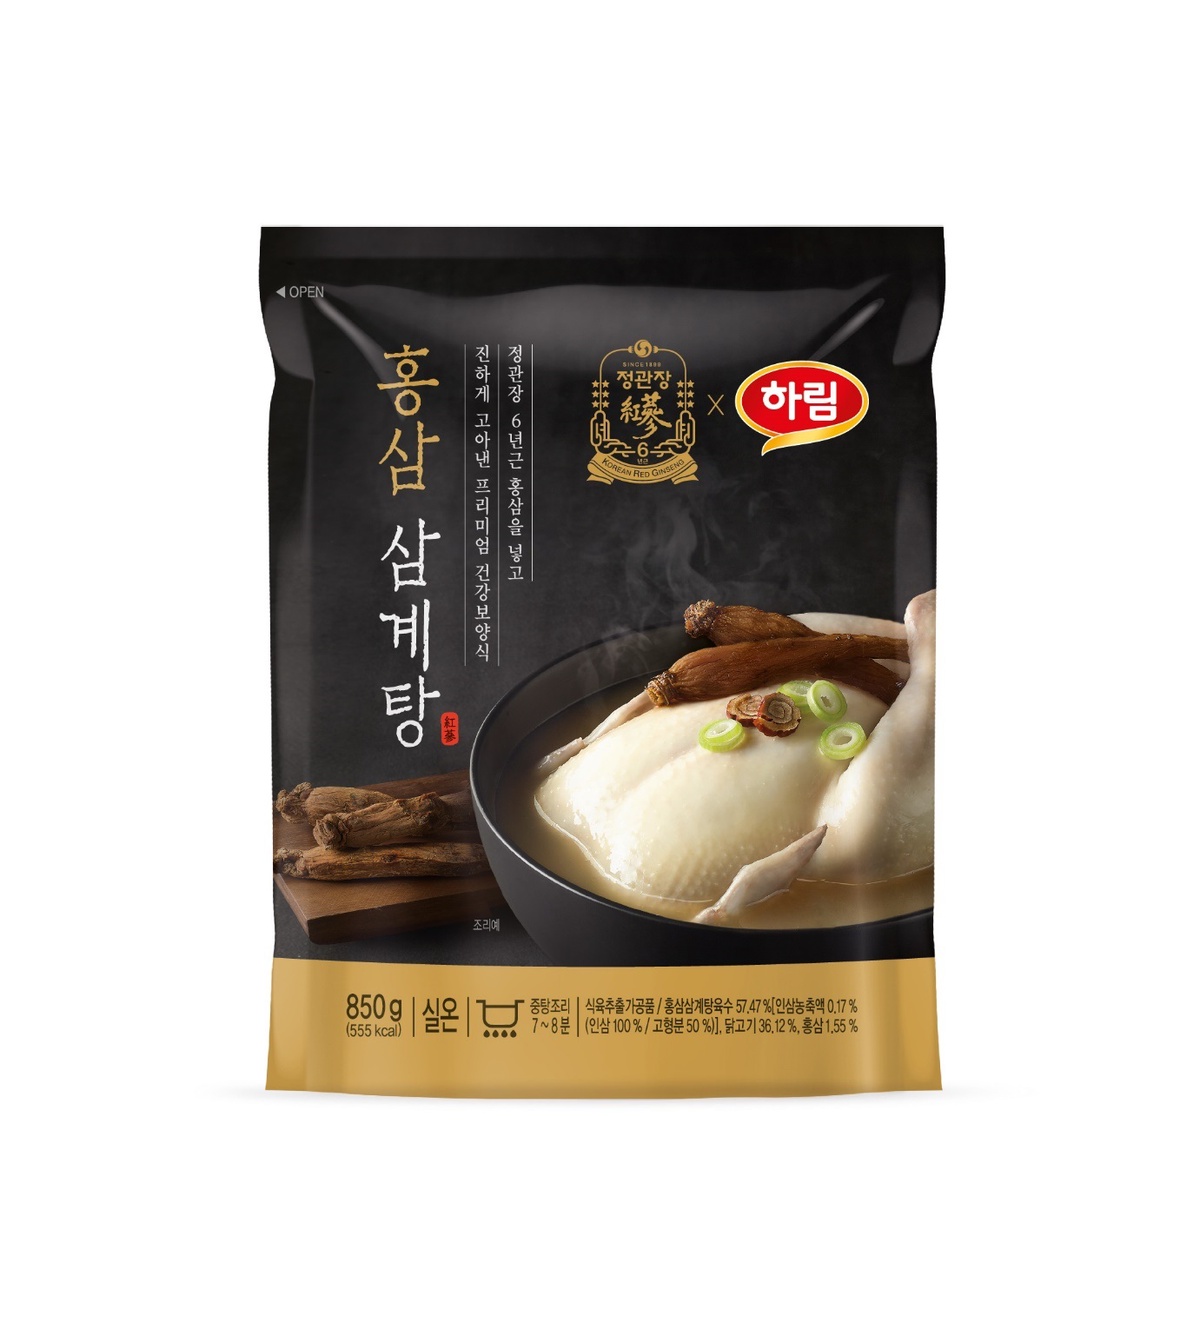 จองควานจาง แบรนด์โสมเกาหลีชั้นนำ ขอเสนอผลิตภัณฑ์ไก่ตุ๋นโสมแดง อาหารบำรุงกำลังยอดนิยมในหน้าร้อน